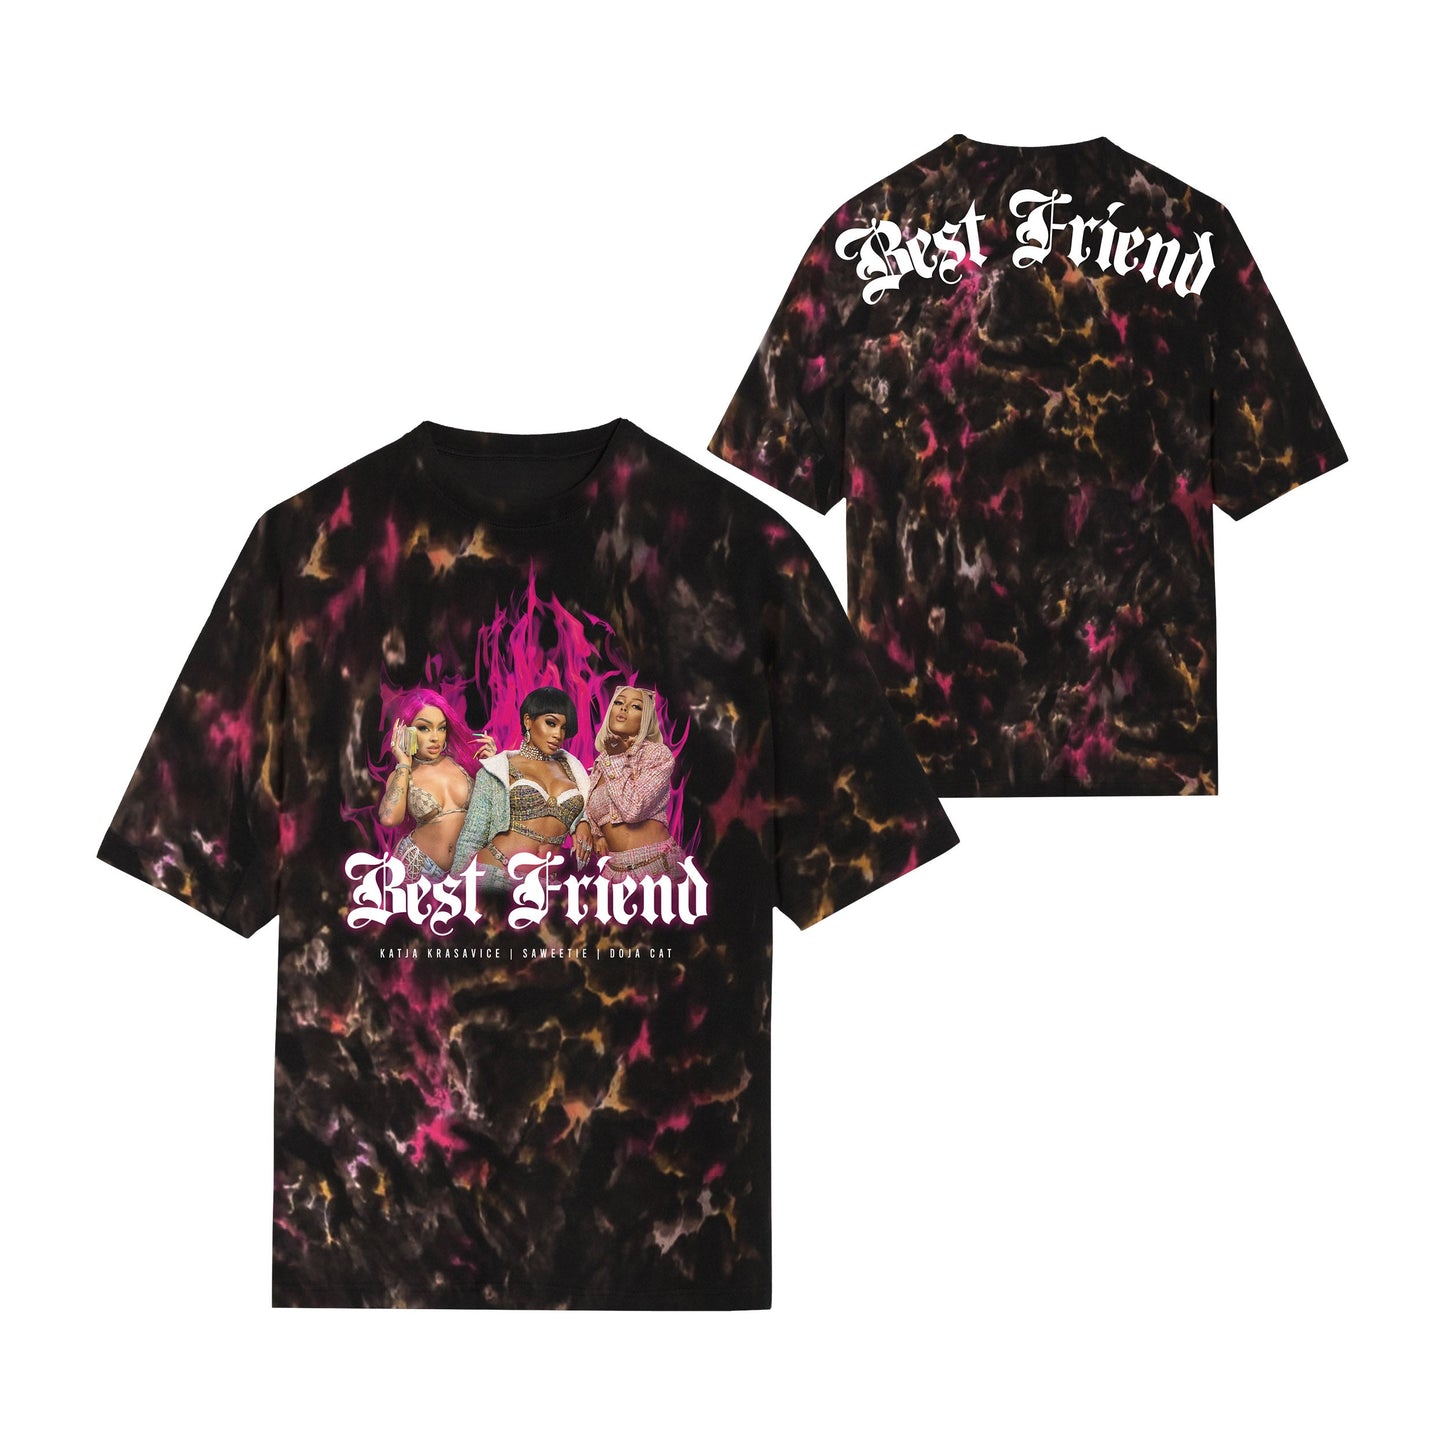 Best Friend - T-Shirt